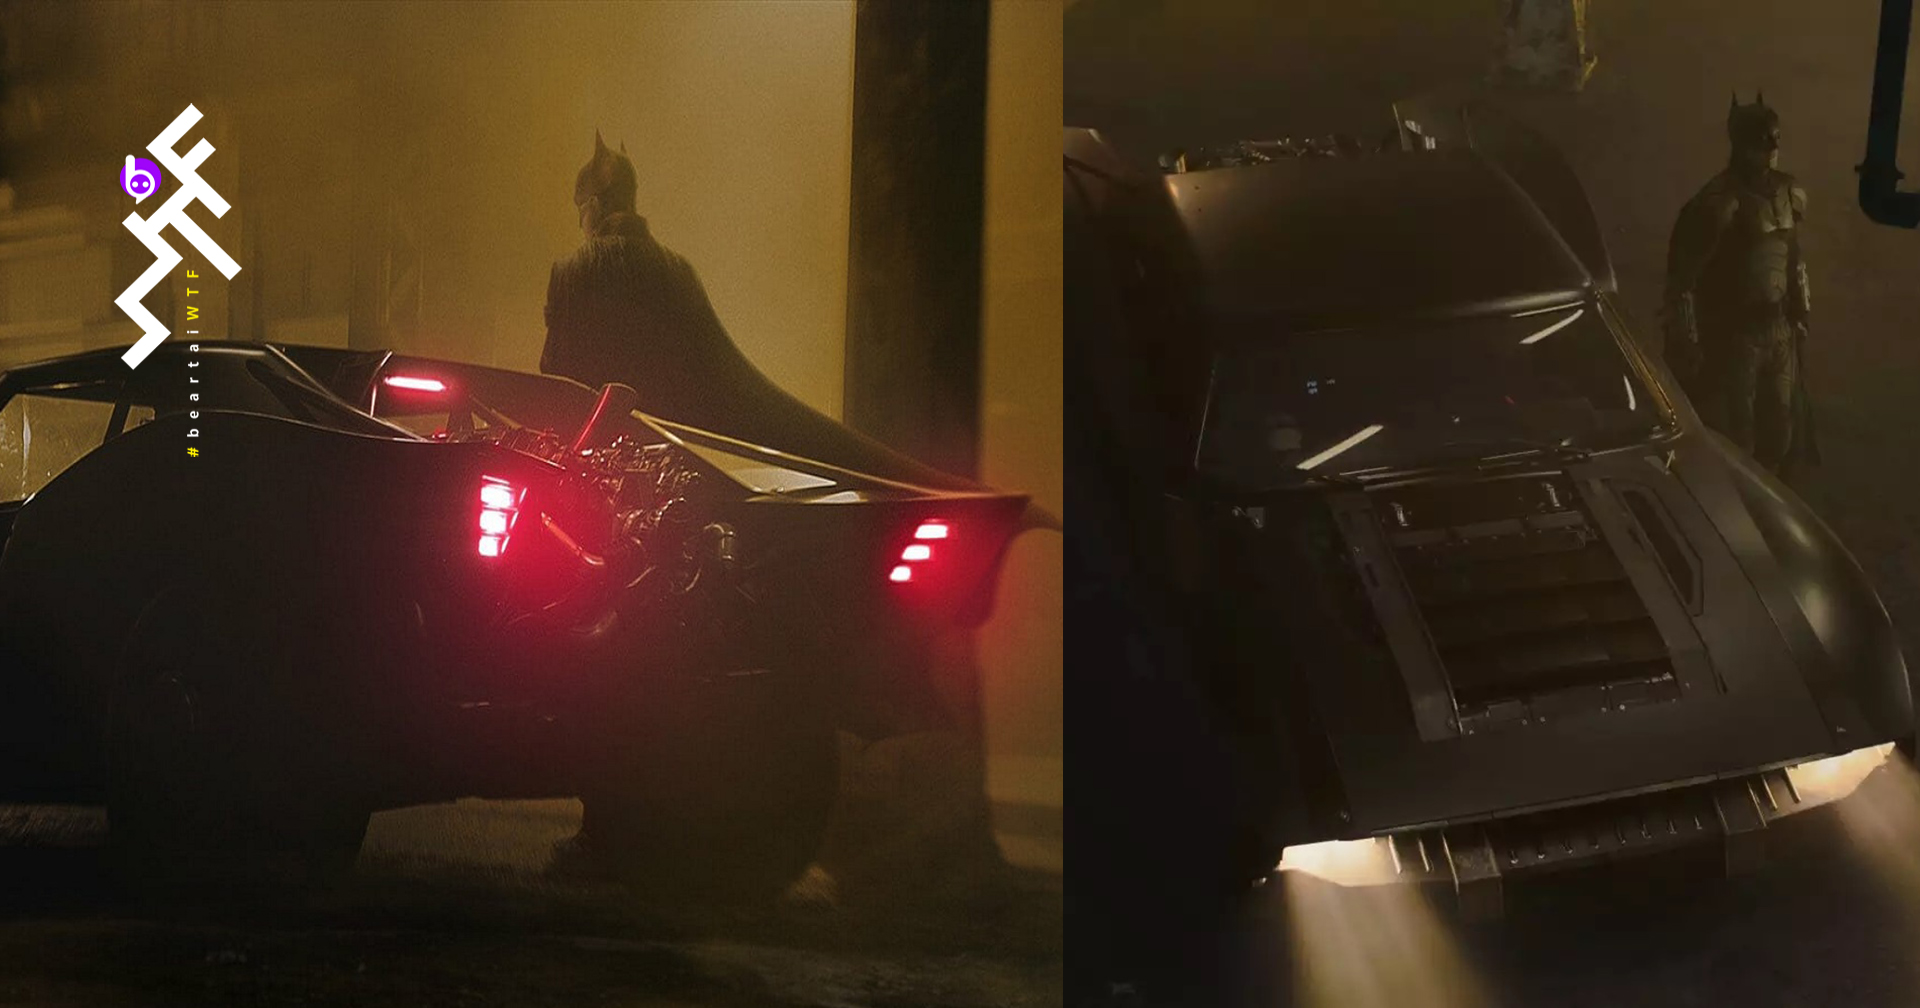 ชมภาพรถ “Batmobile” ชัด ๆ ในกองถ่าย The Batman ตอนกลางวัน